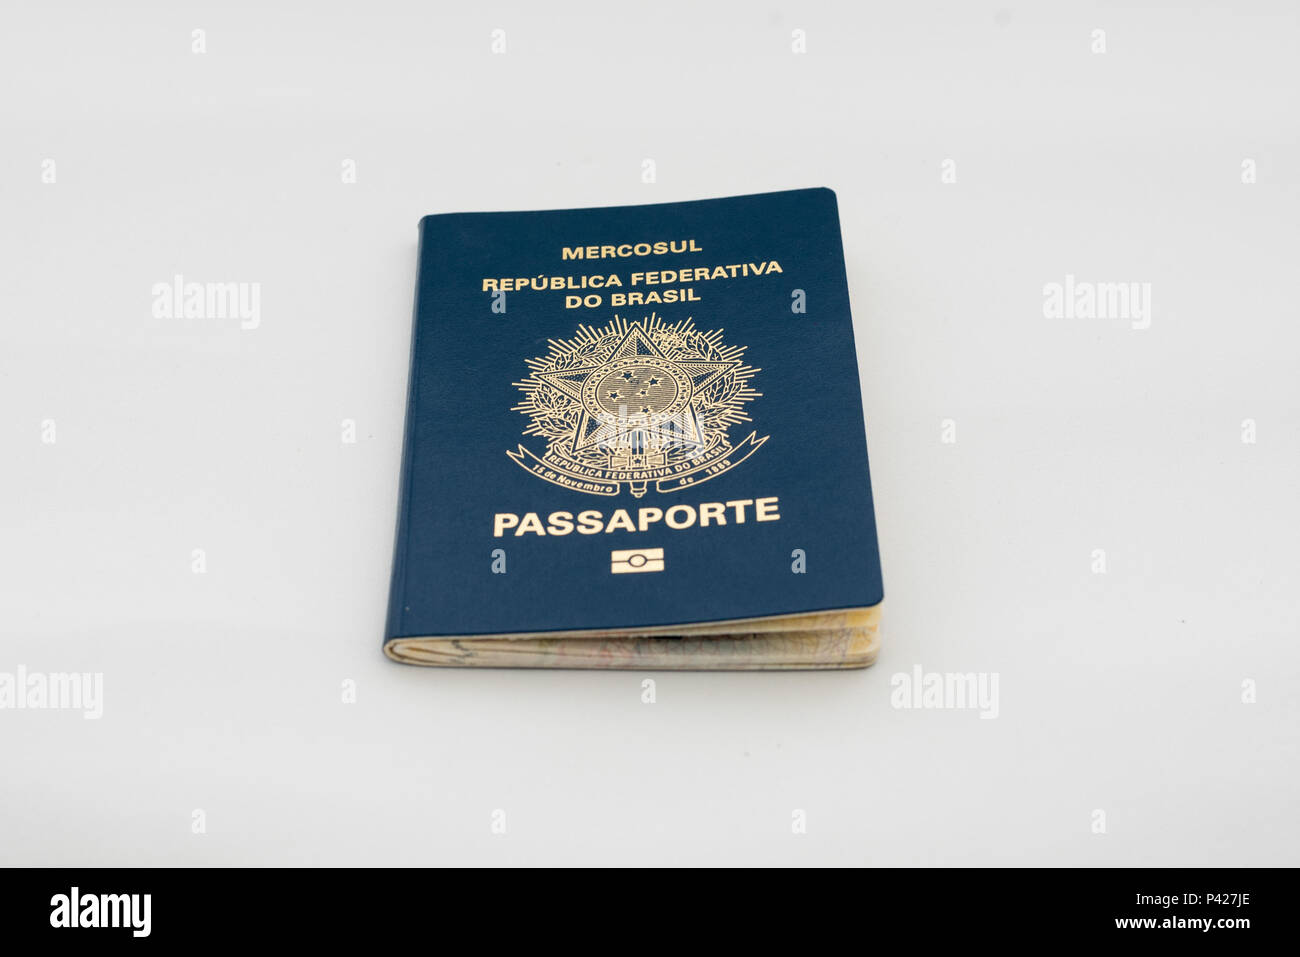 Passaporte brasileiro. Stock Photo